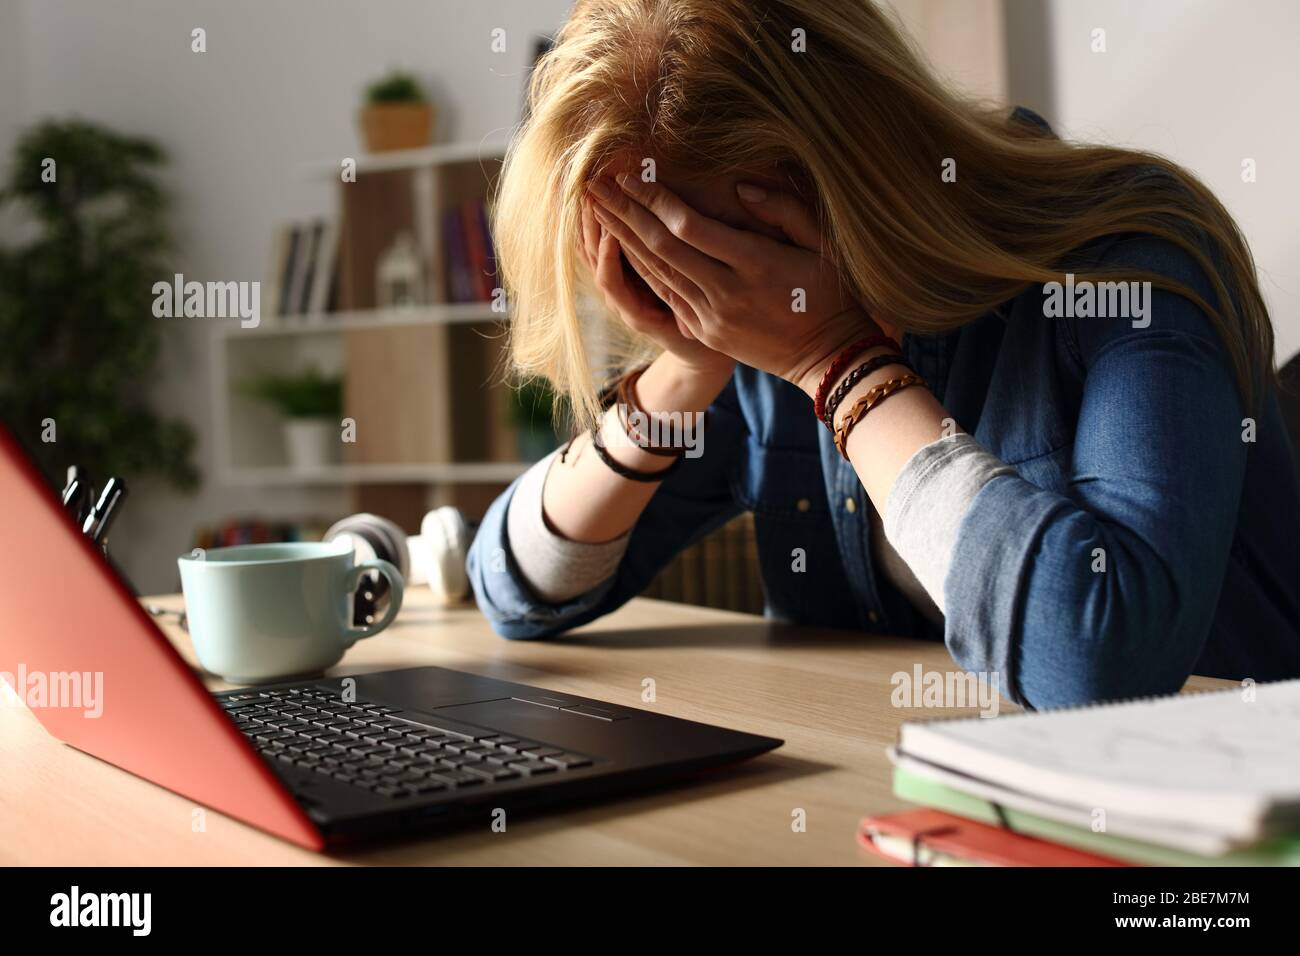 Nahaufnahme eines traurigen Studenten, der schlechte Nachrichten auf einem Laptop empfängt, der nachts auf einem Schreibtisch sitzt Stockfoto